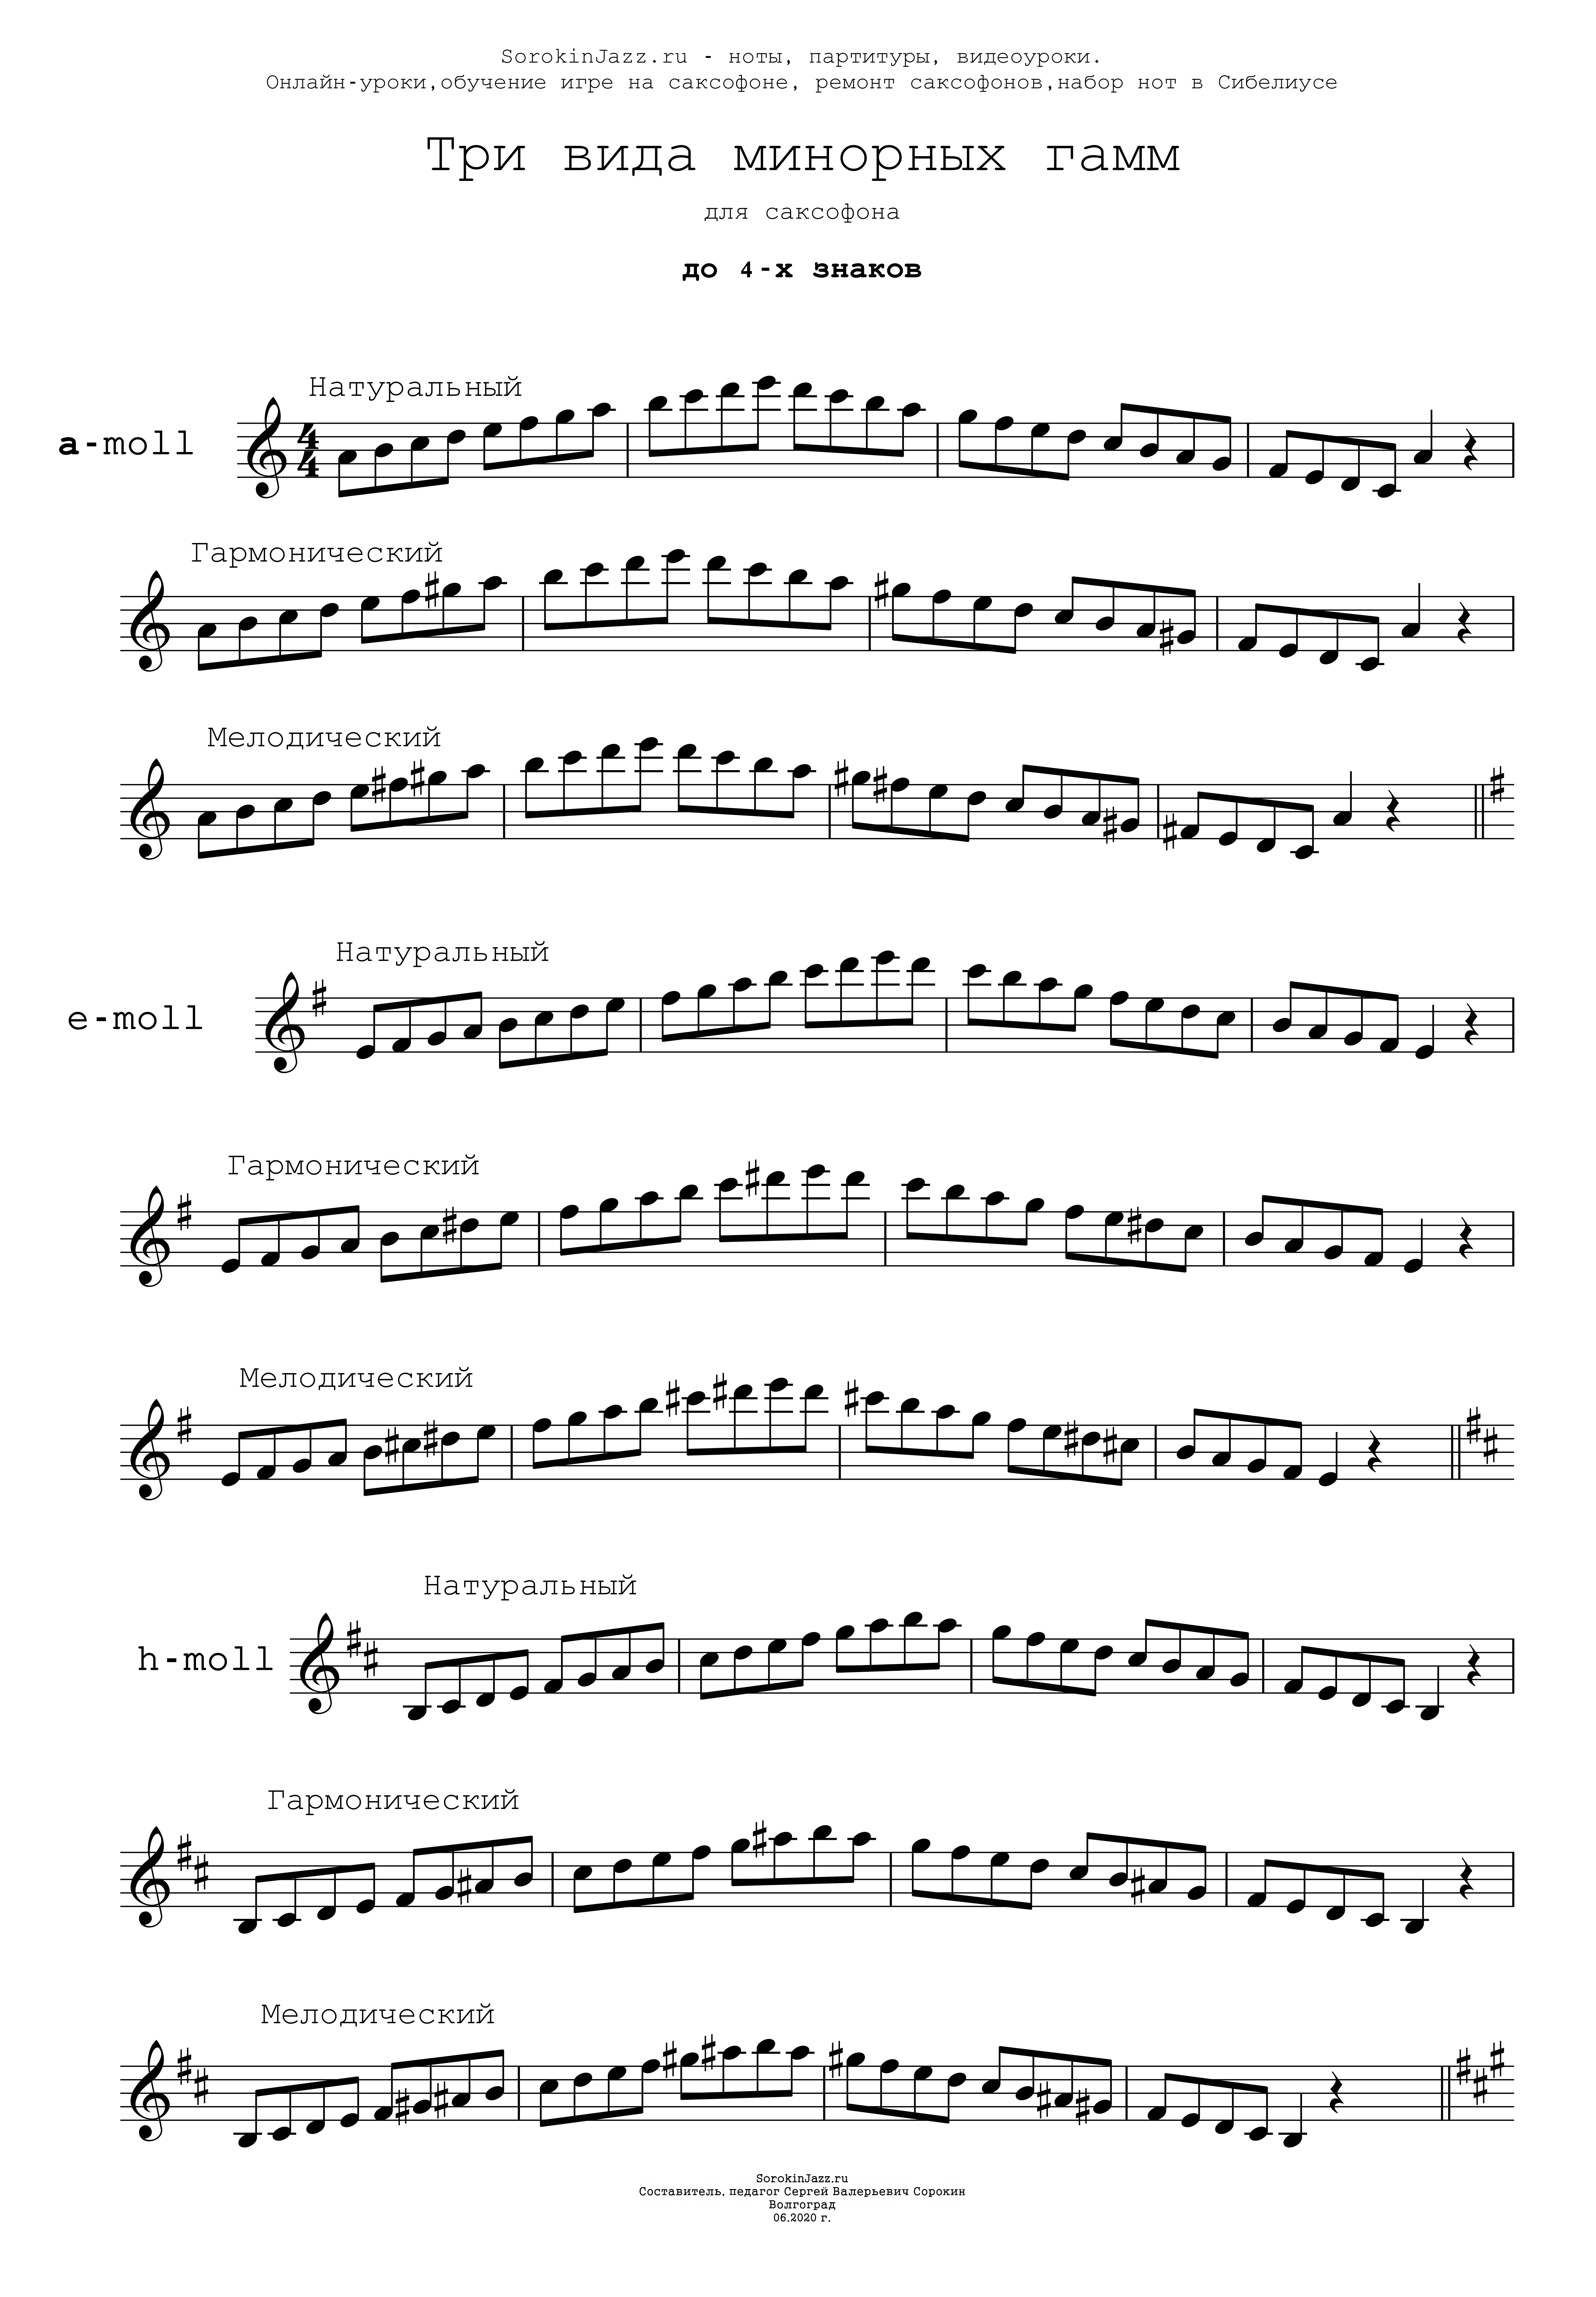 Сборник минорных гамм до 4-х знаков для саксофона